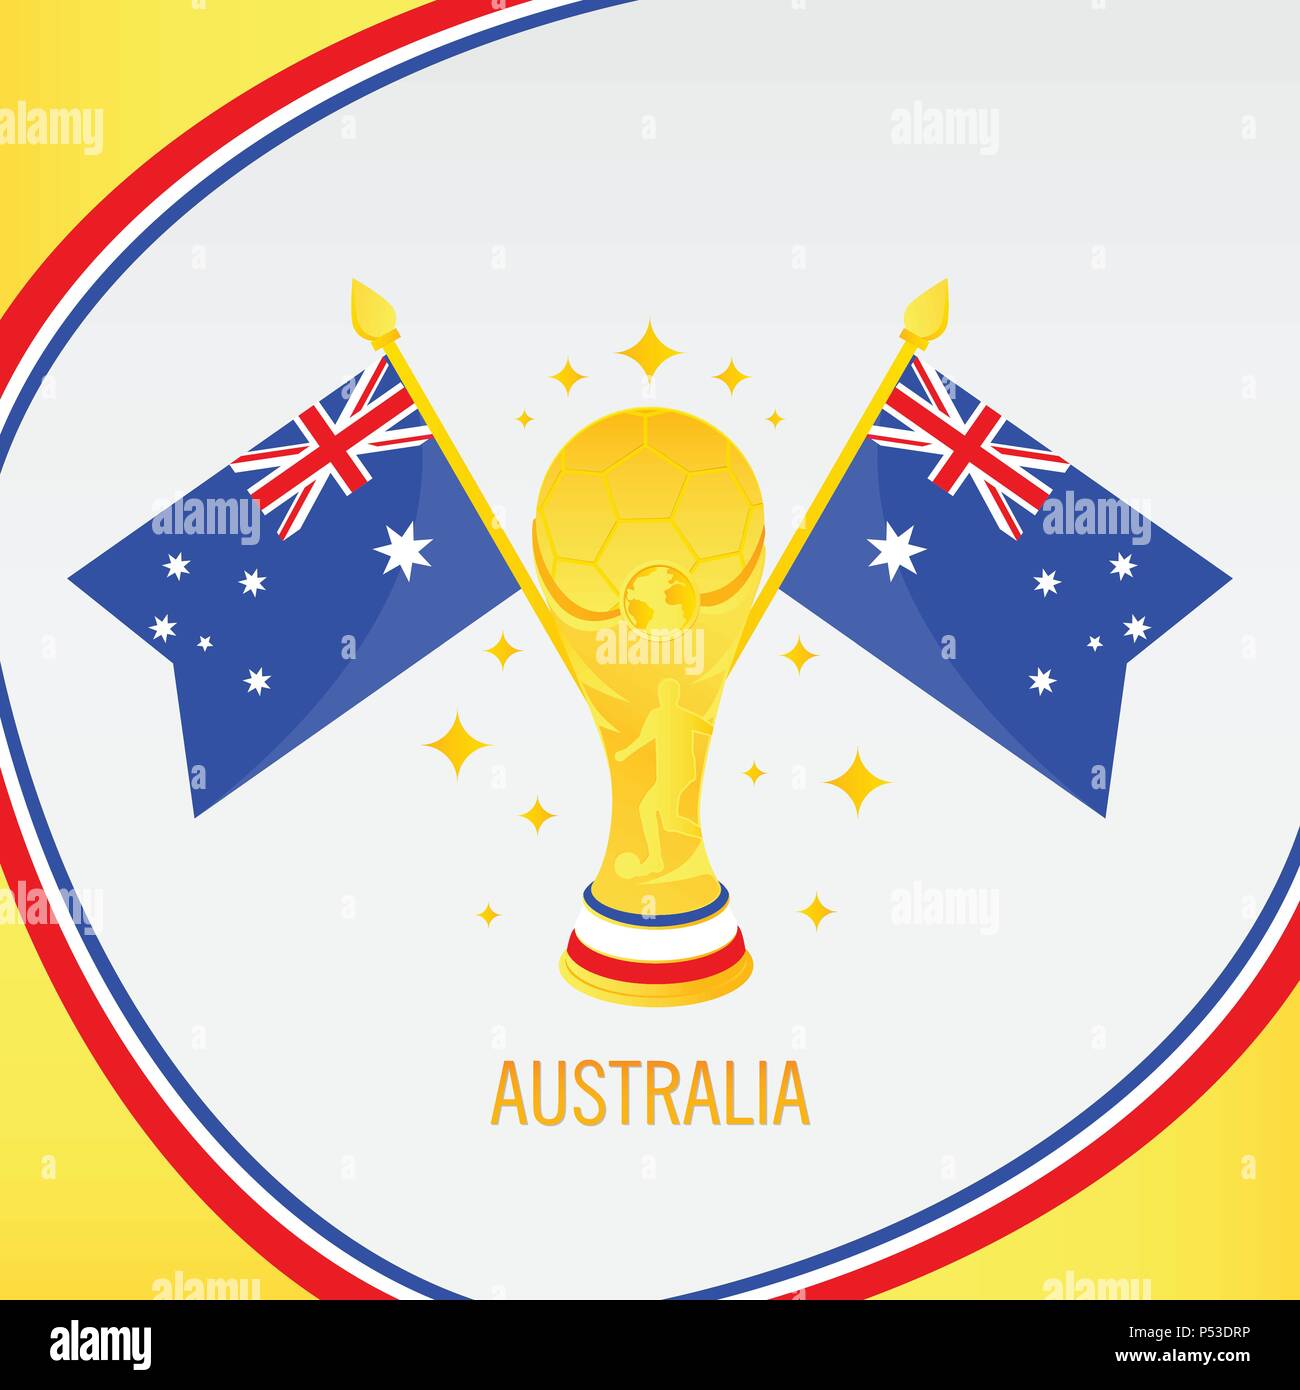 Australia Campione del calcio 2018 - Bandiera e Golden Trophy / Cup Illustrazione Vettoriale